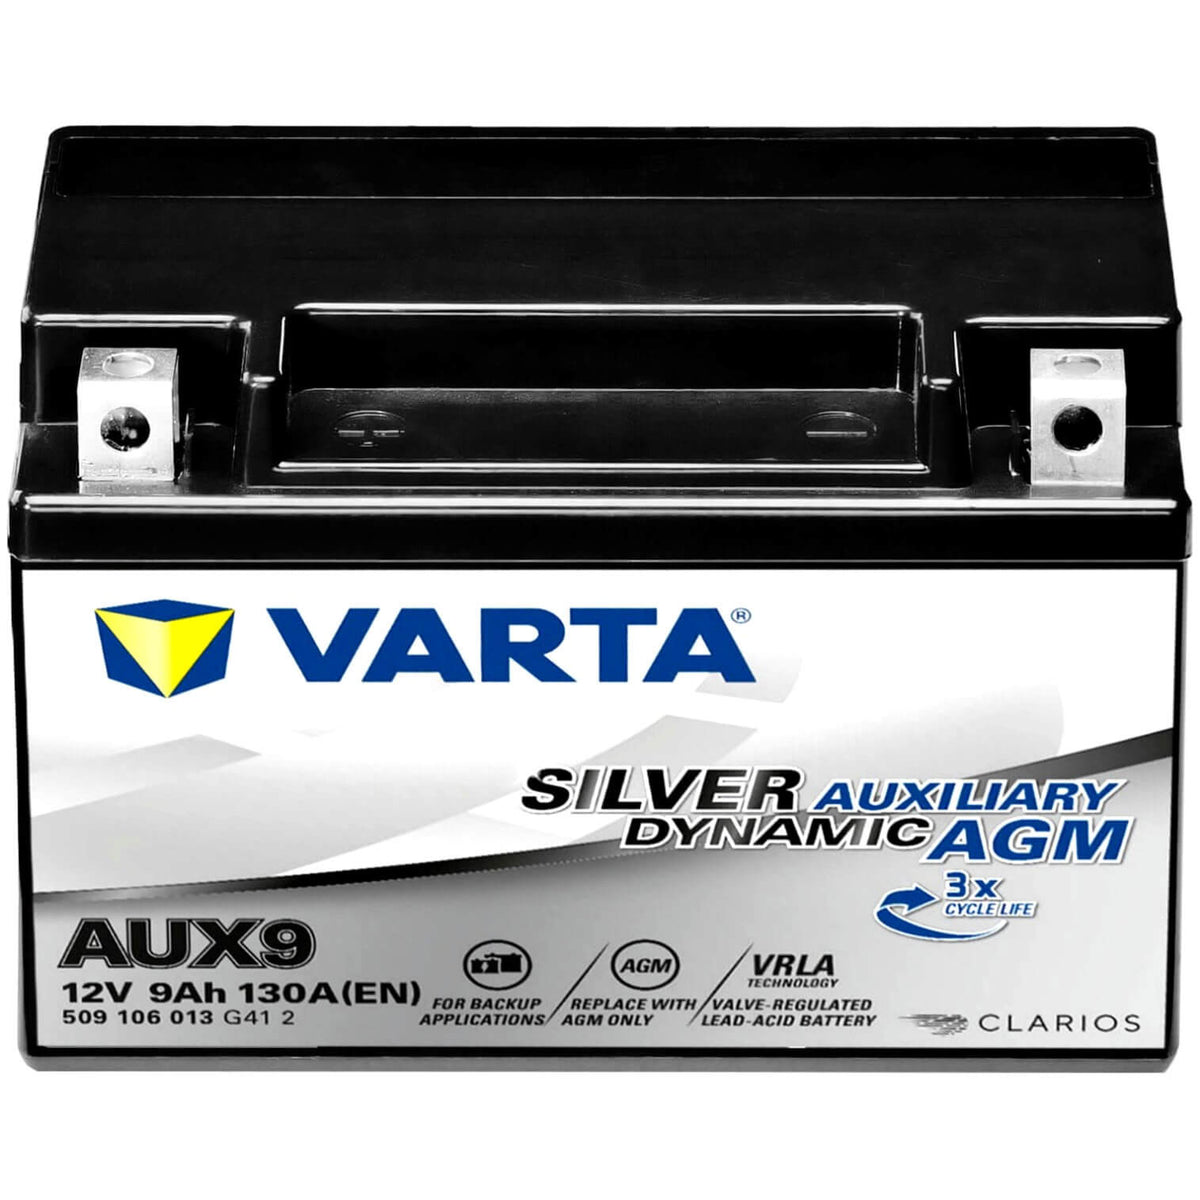 Varta AUX9 Silver Auxiliary AGM 12V 9Ah Stützbatterie Volvo 31296300